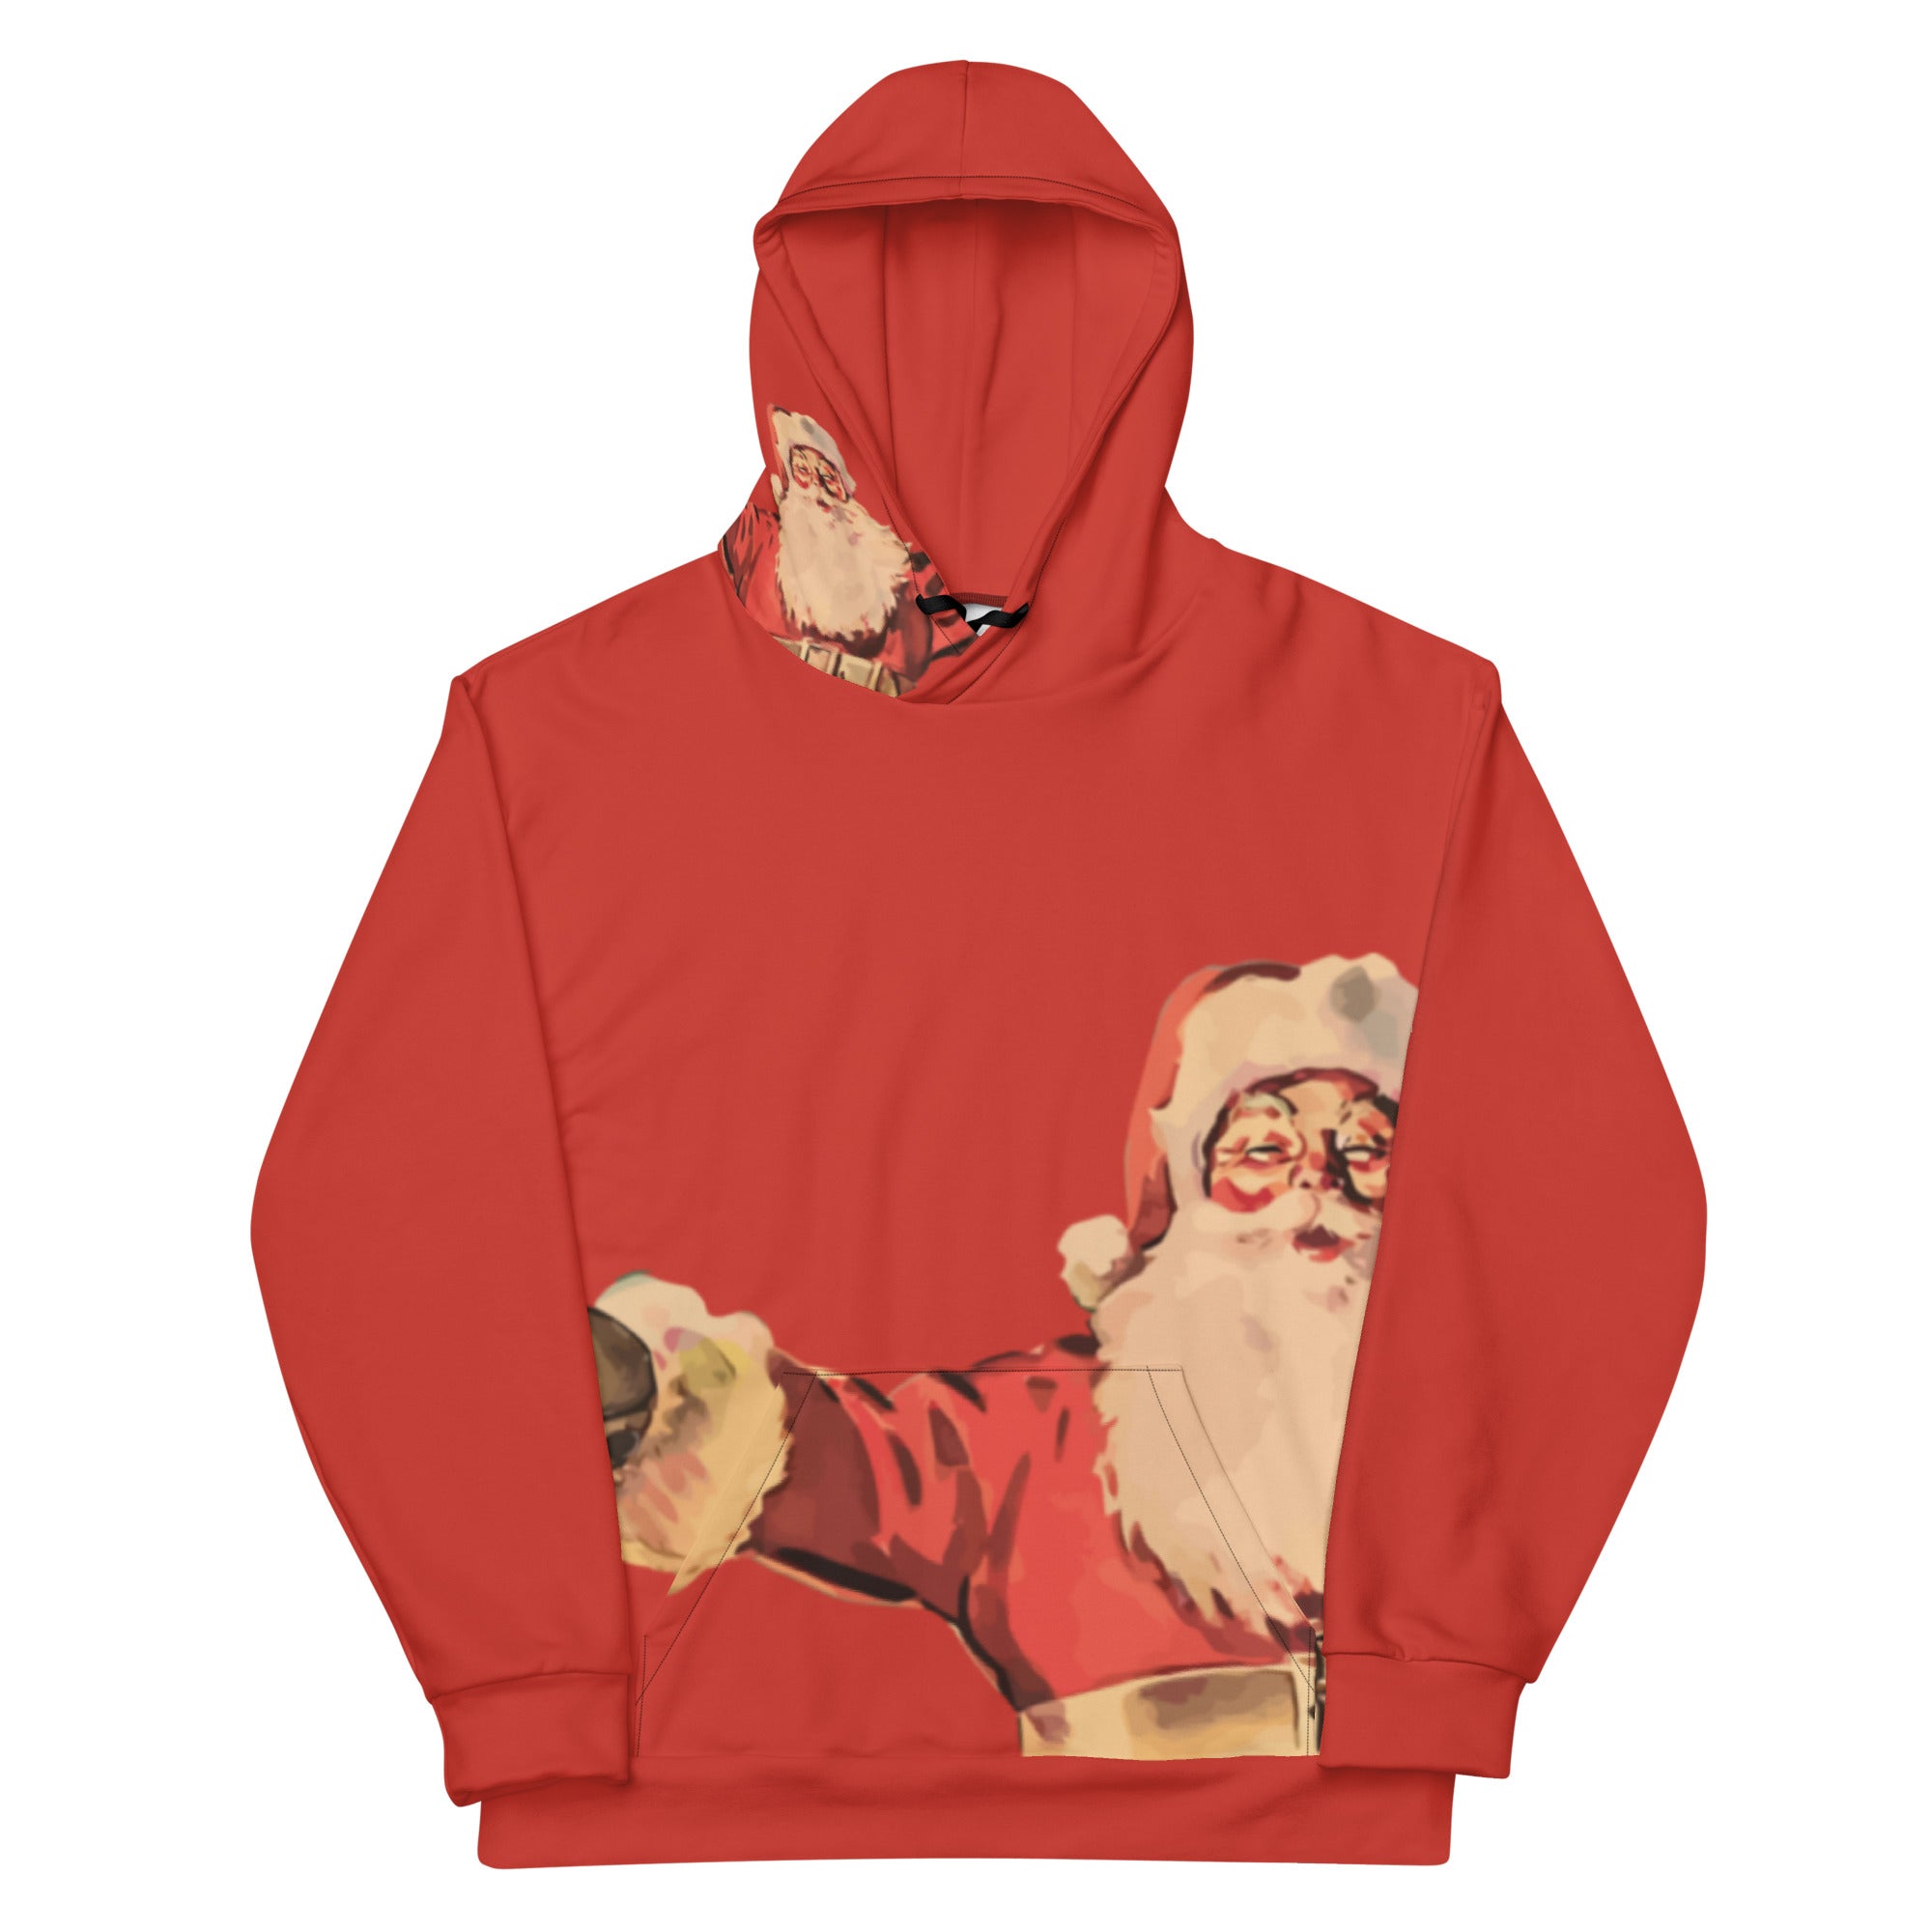 Happy Santa Claus Unisex Hoodie - Red